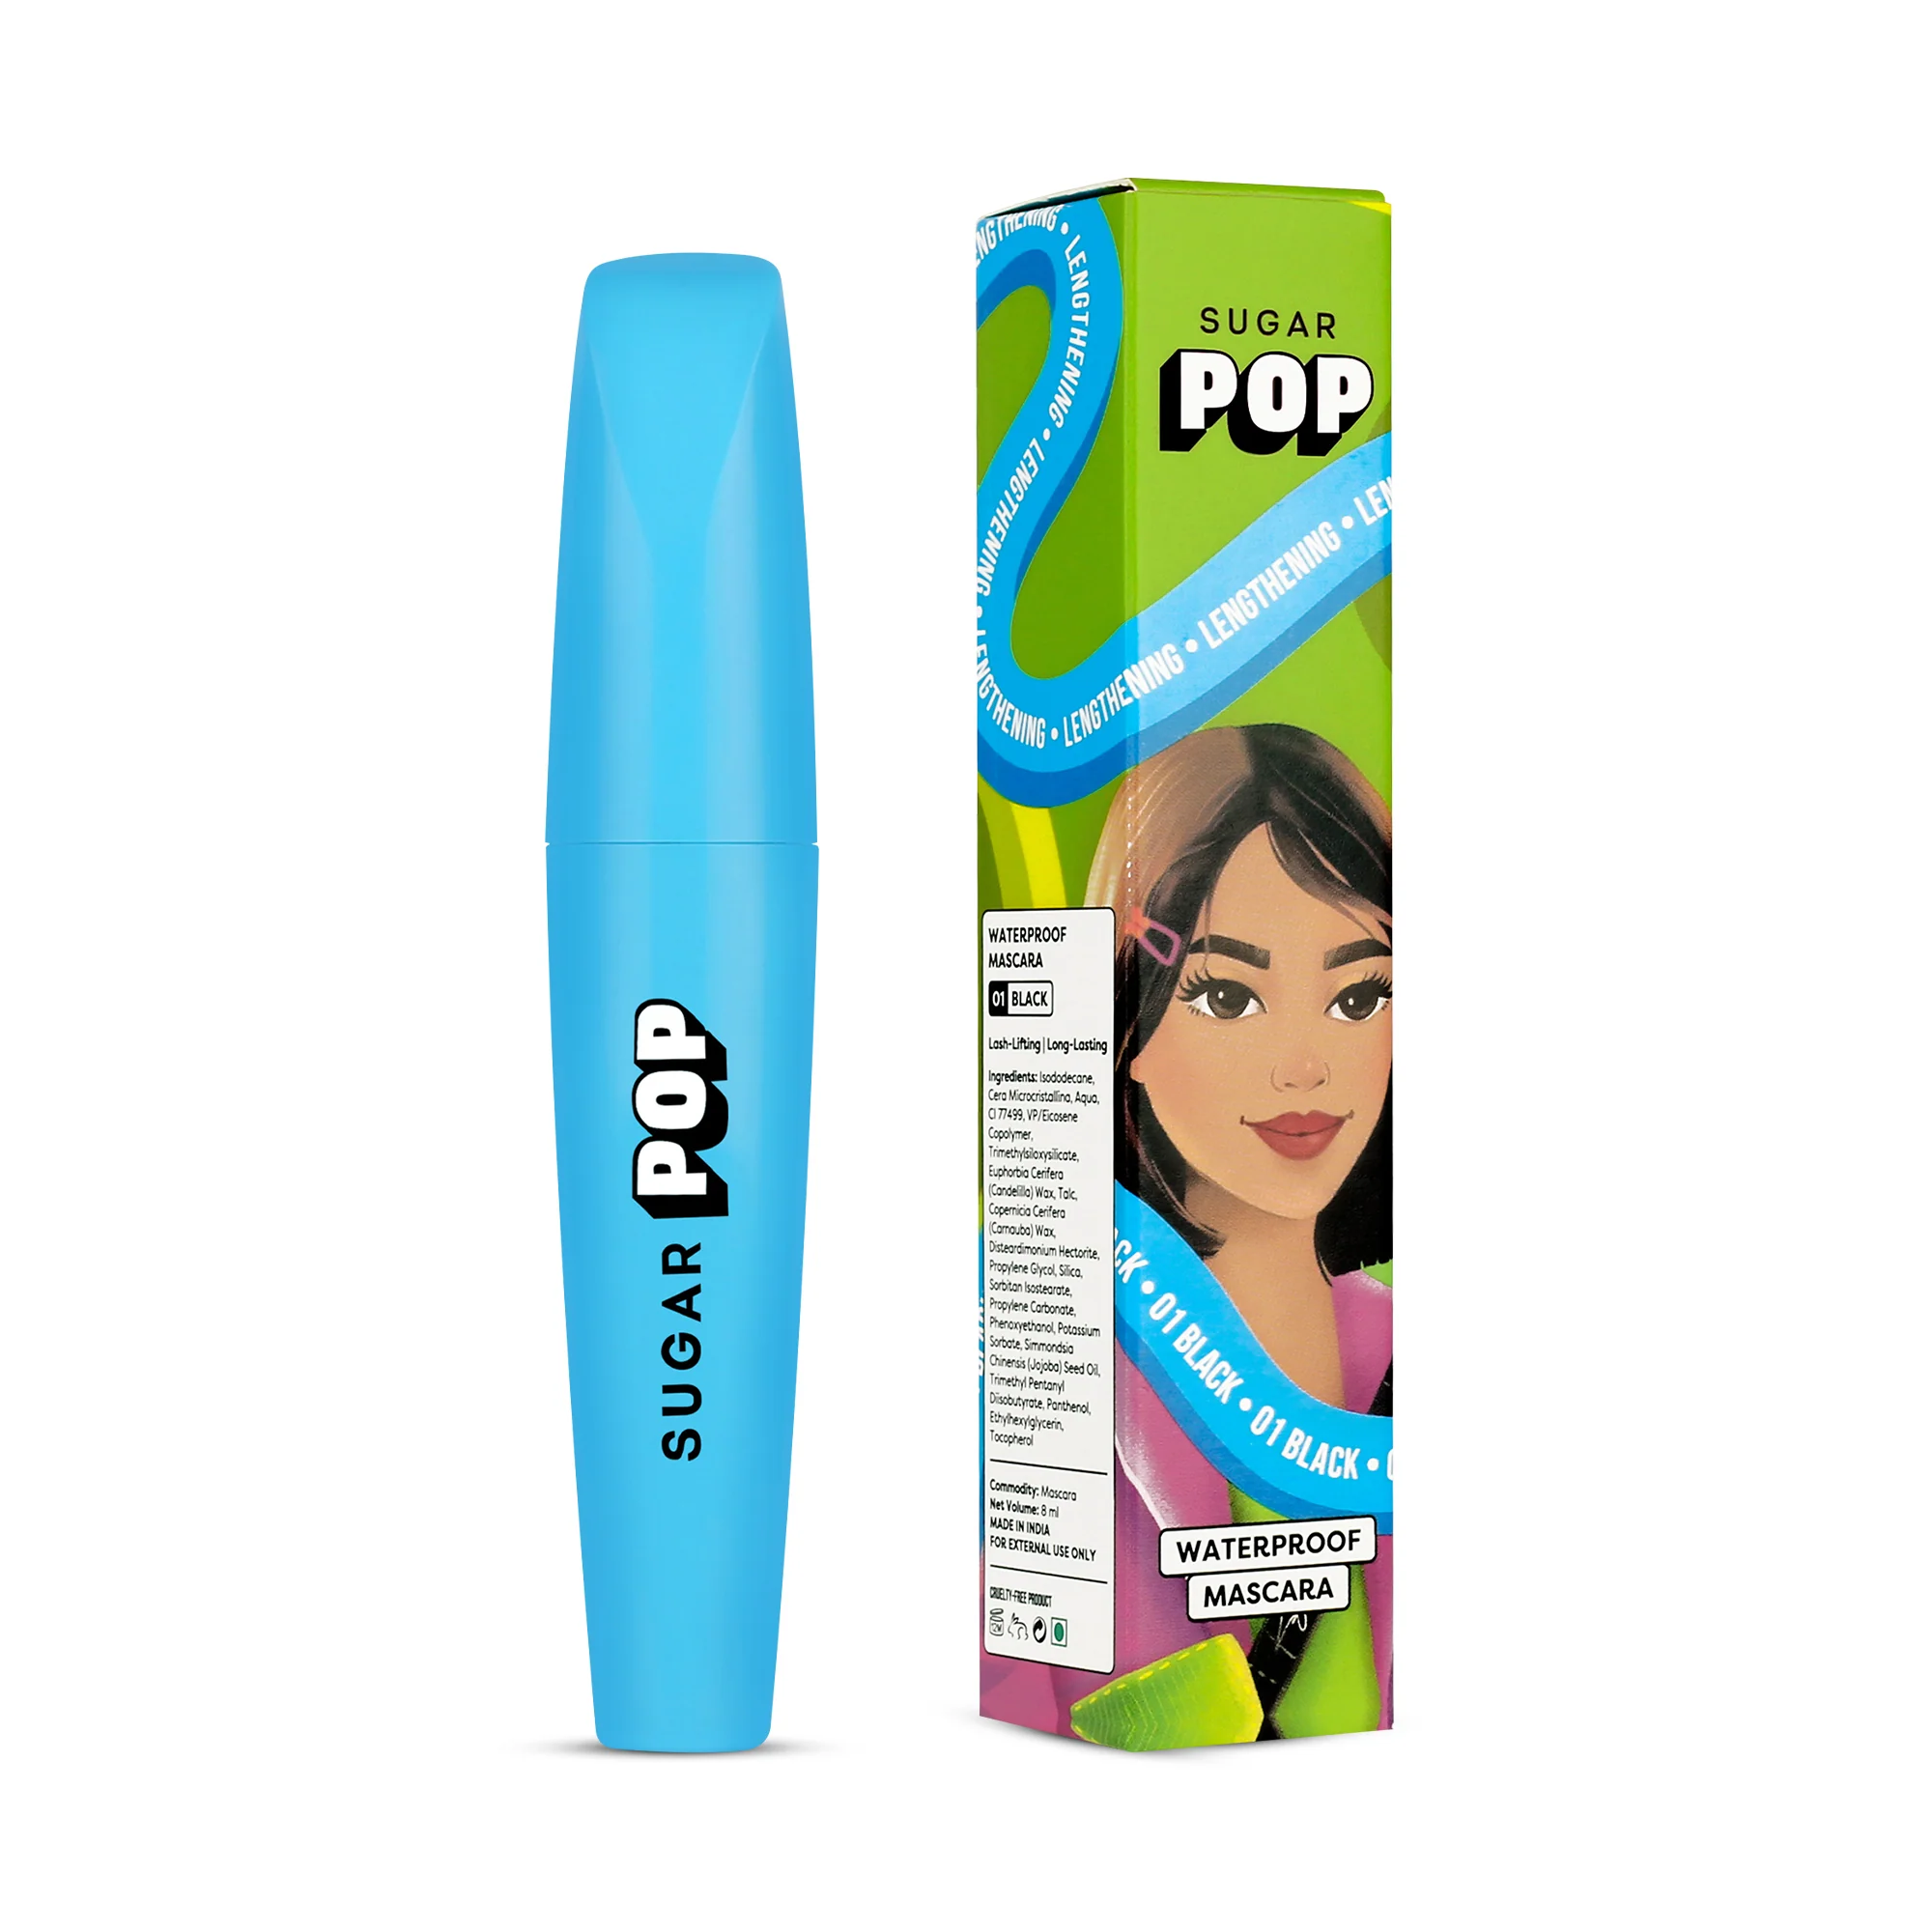 SUGAR POP Waterproof Mascara